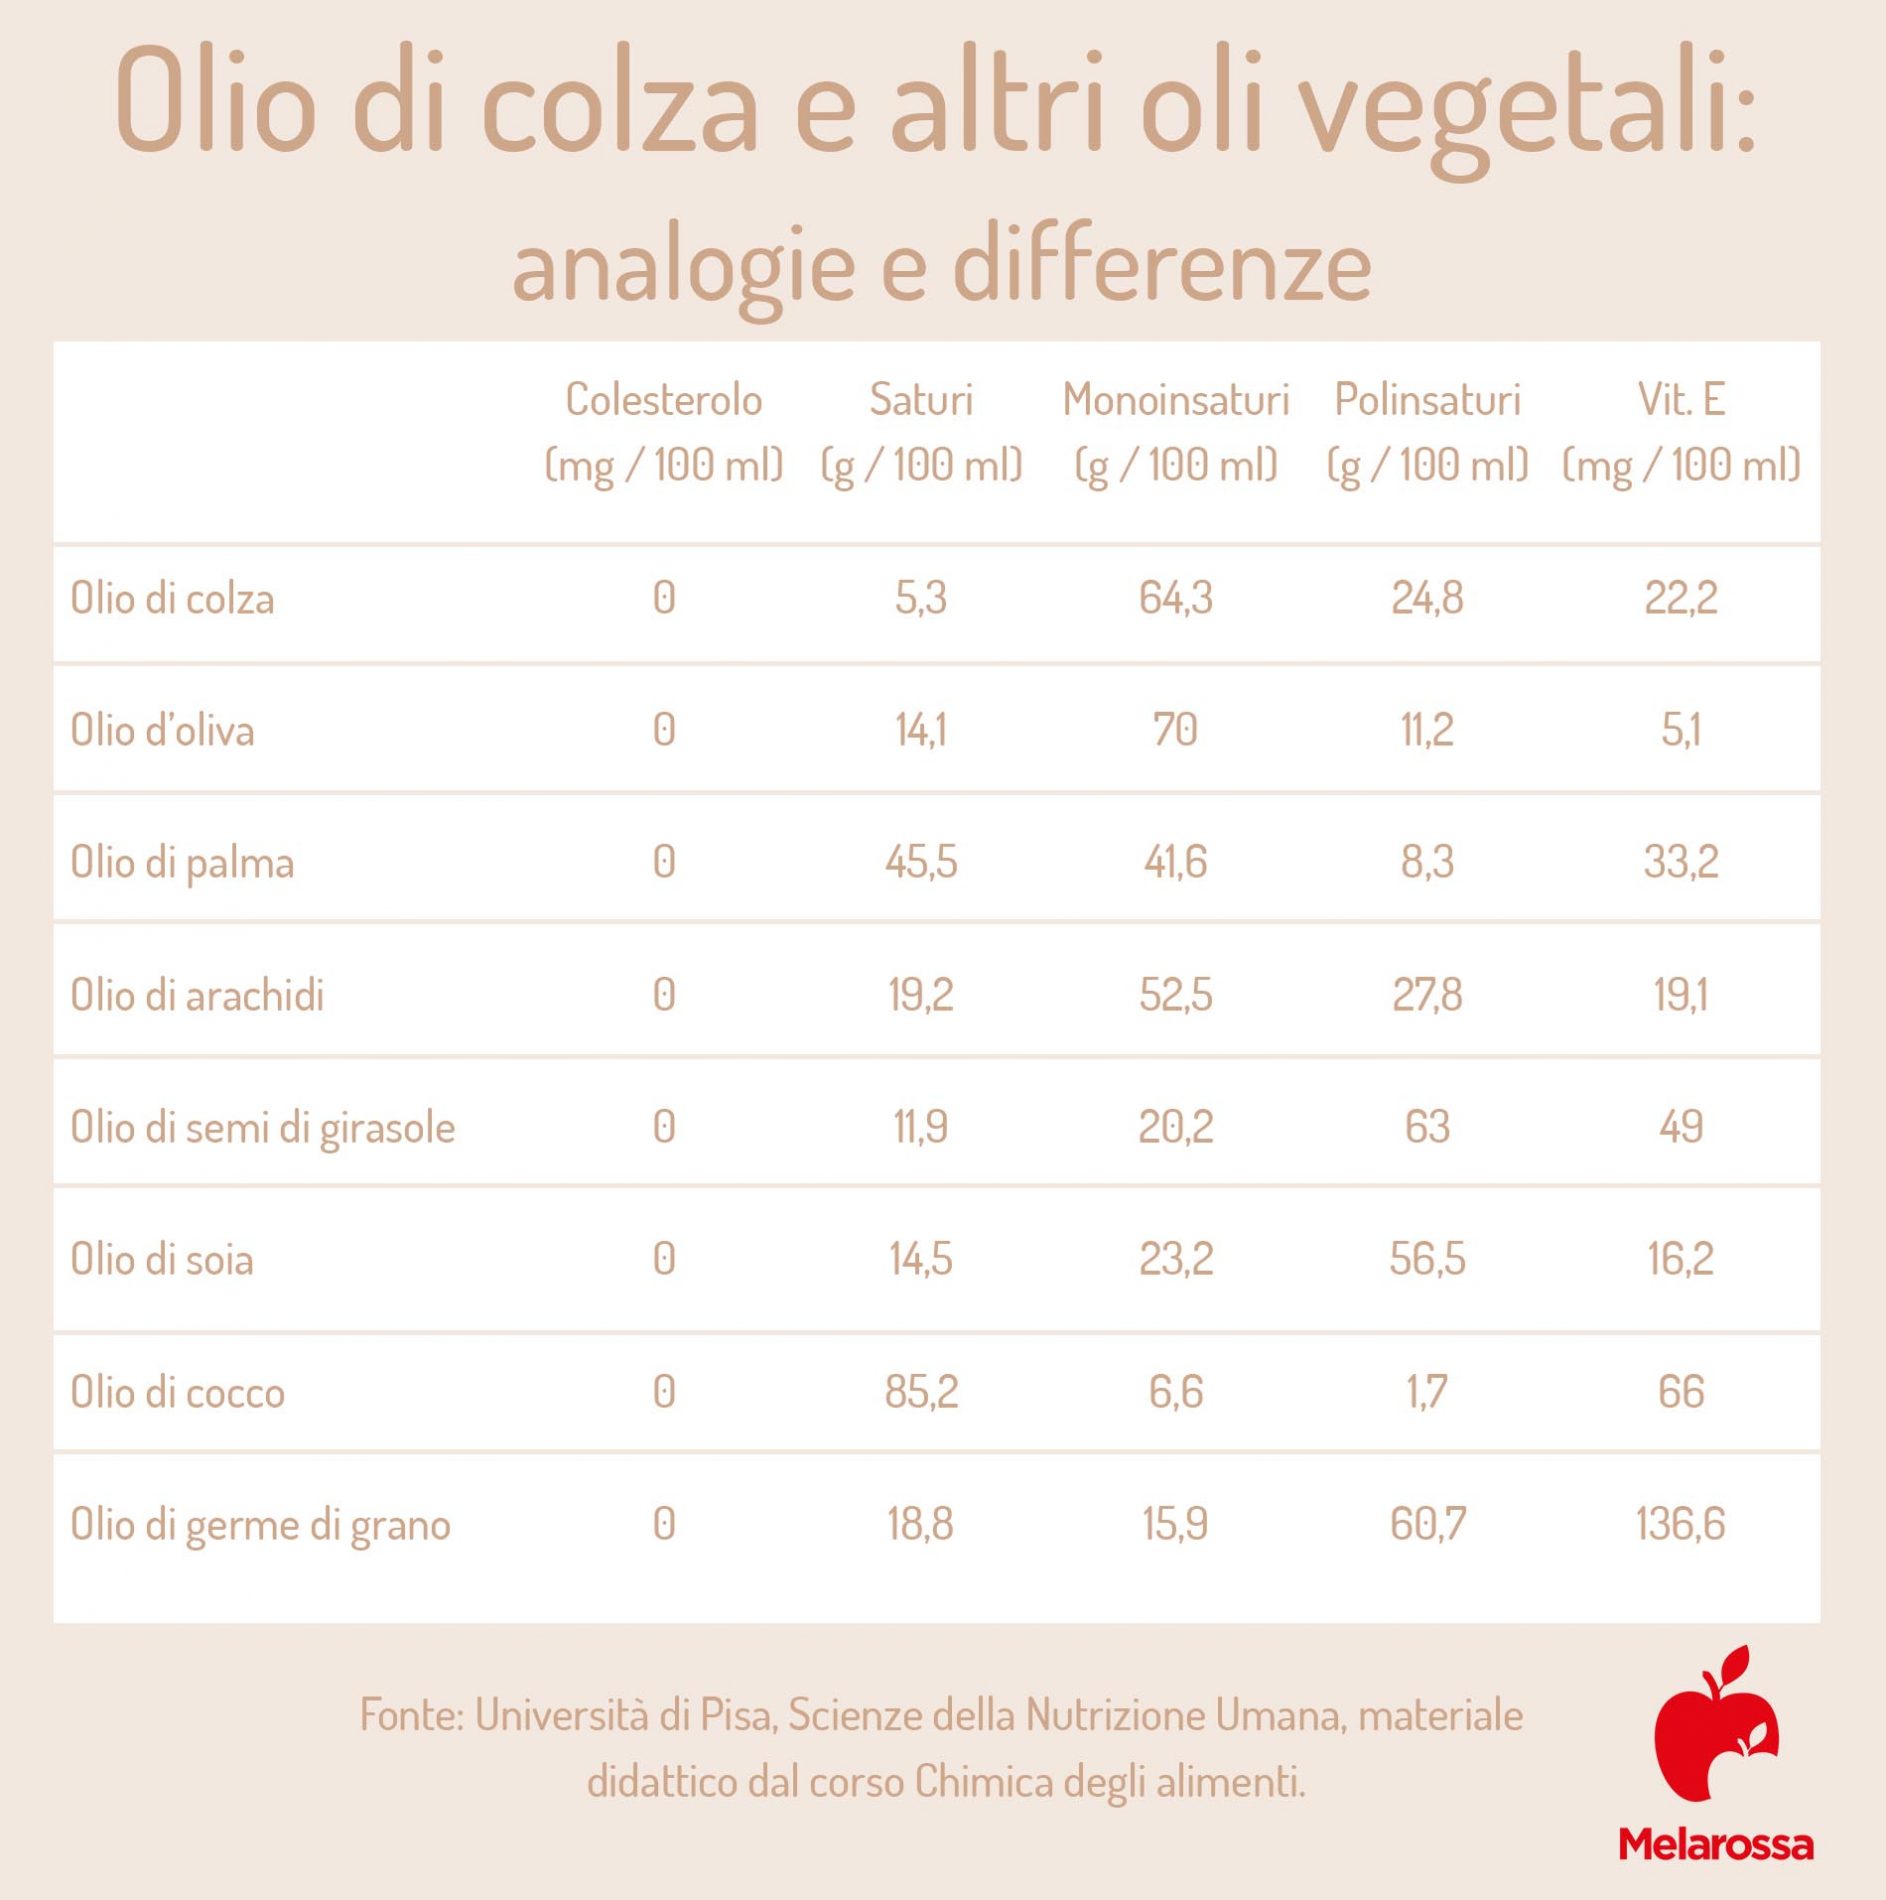 olio di colza e oli vegetali: analogie e differenze